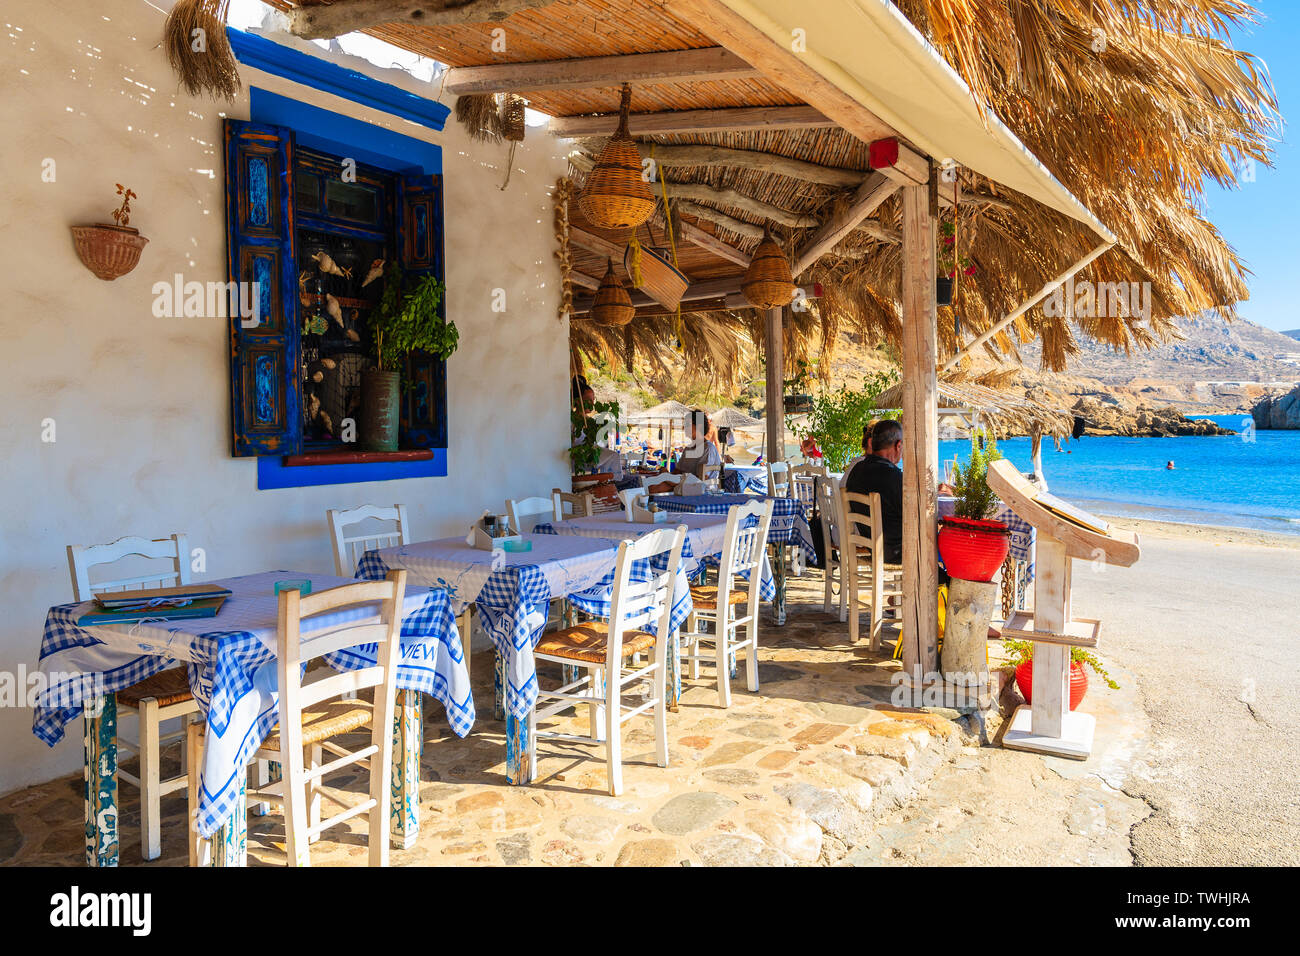 FINIKI PORTA, KARPATHOS ISLAND - Set 25, 2018: tipica taverna greca in Finiki porta sul isola di Karpathos. La Grecia è molto popolare meta di vacanza in E Foto Stock